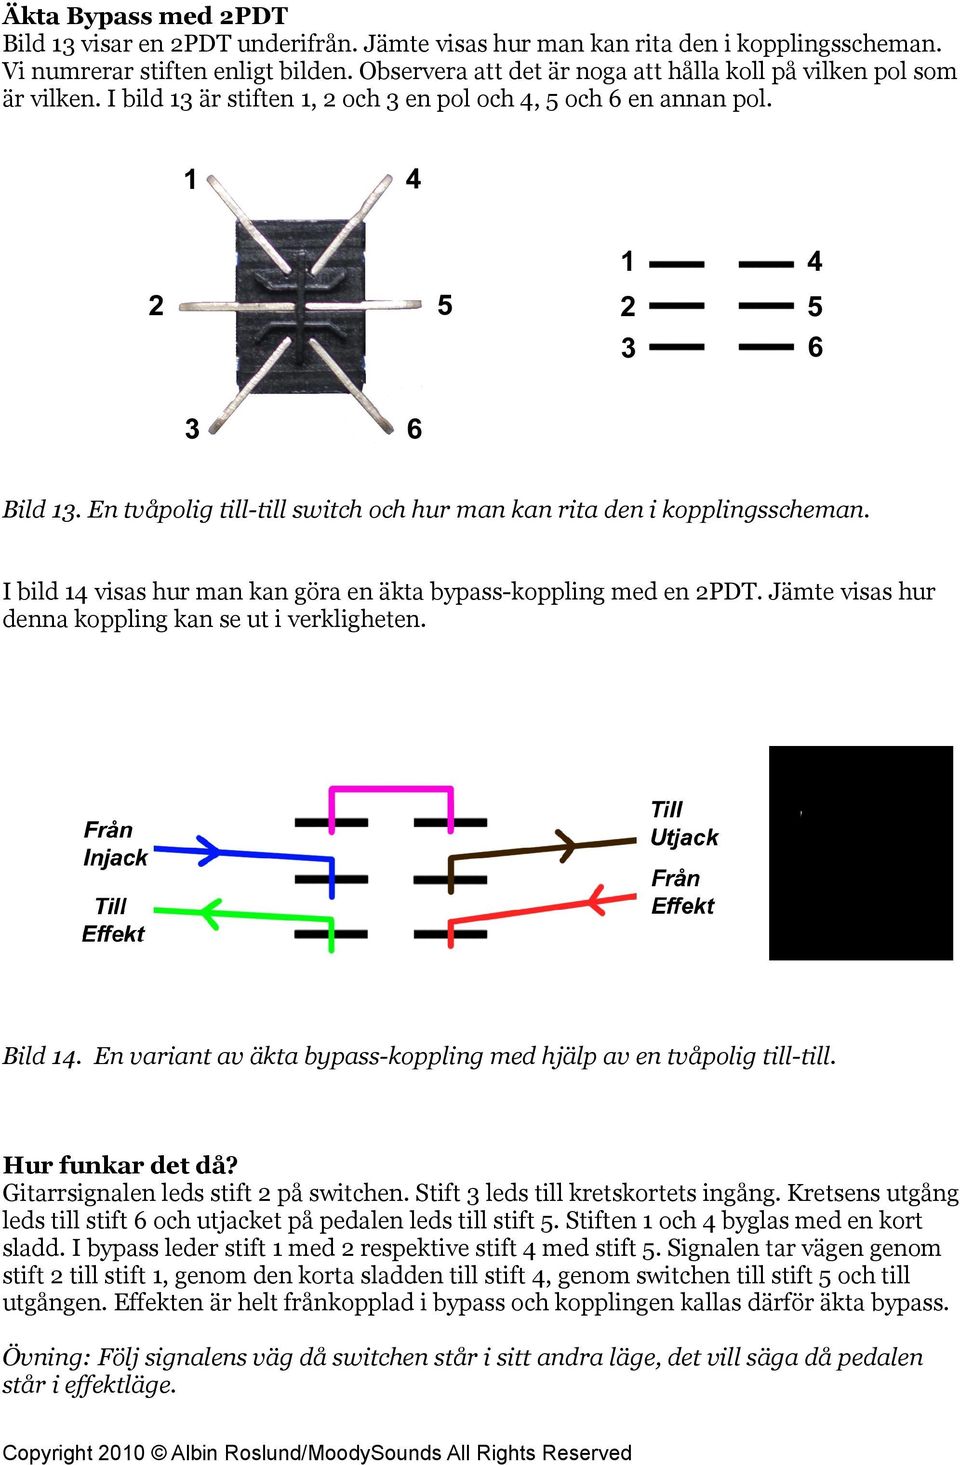 En tvåpolig till-till switch och hur man kan rita den i kopplingsscheman. I bild 14 visas hur man kan göra en äkta bypass-koppling med en 2PDT. Jämte visas hur denna koppling kan se ut i verkligheten.